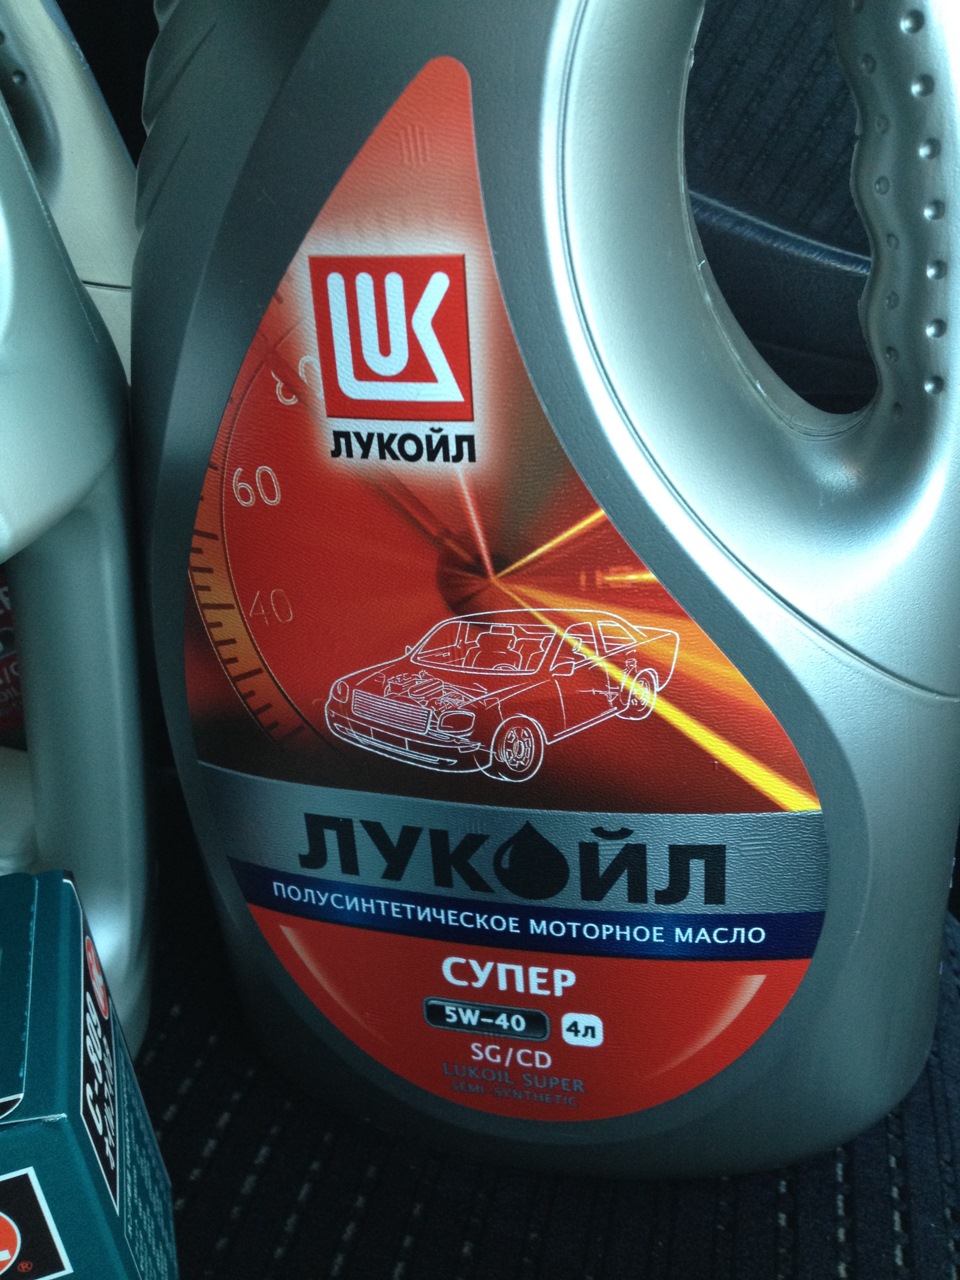 Подобрать масло лукойл по автомобилю